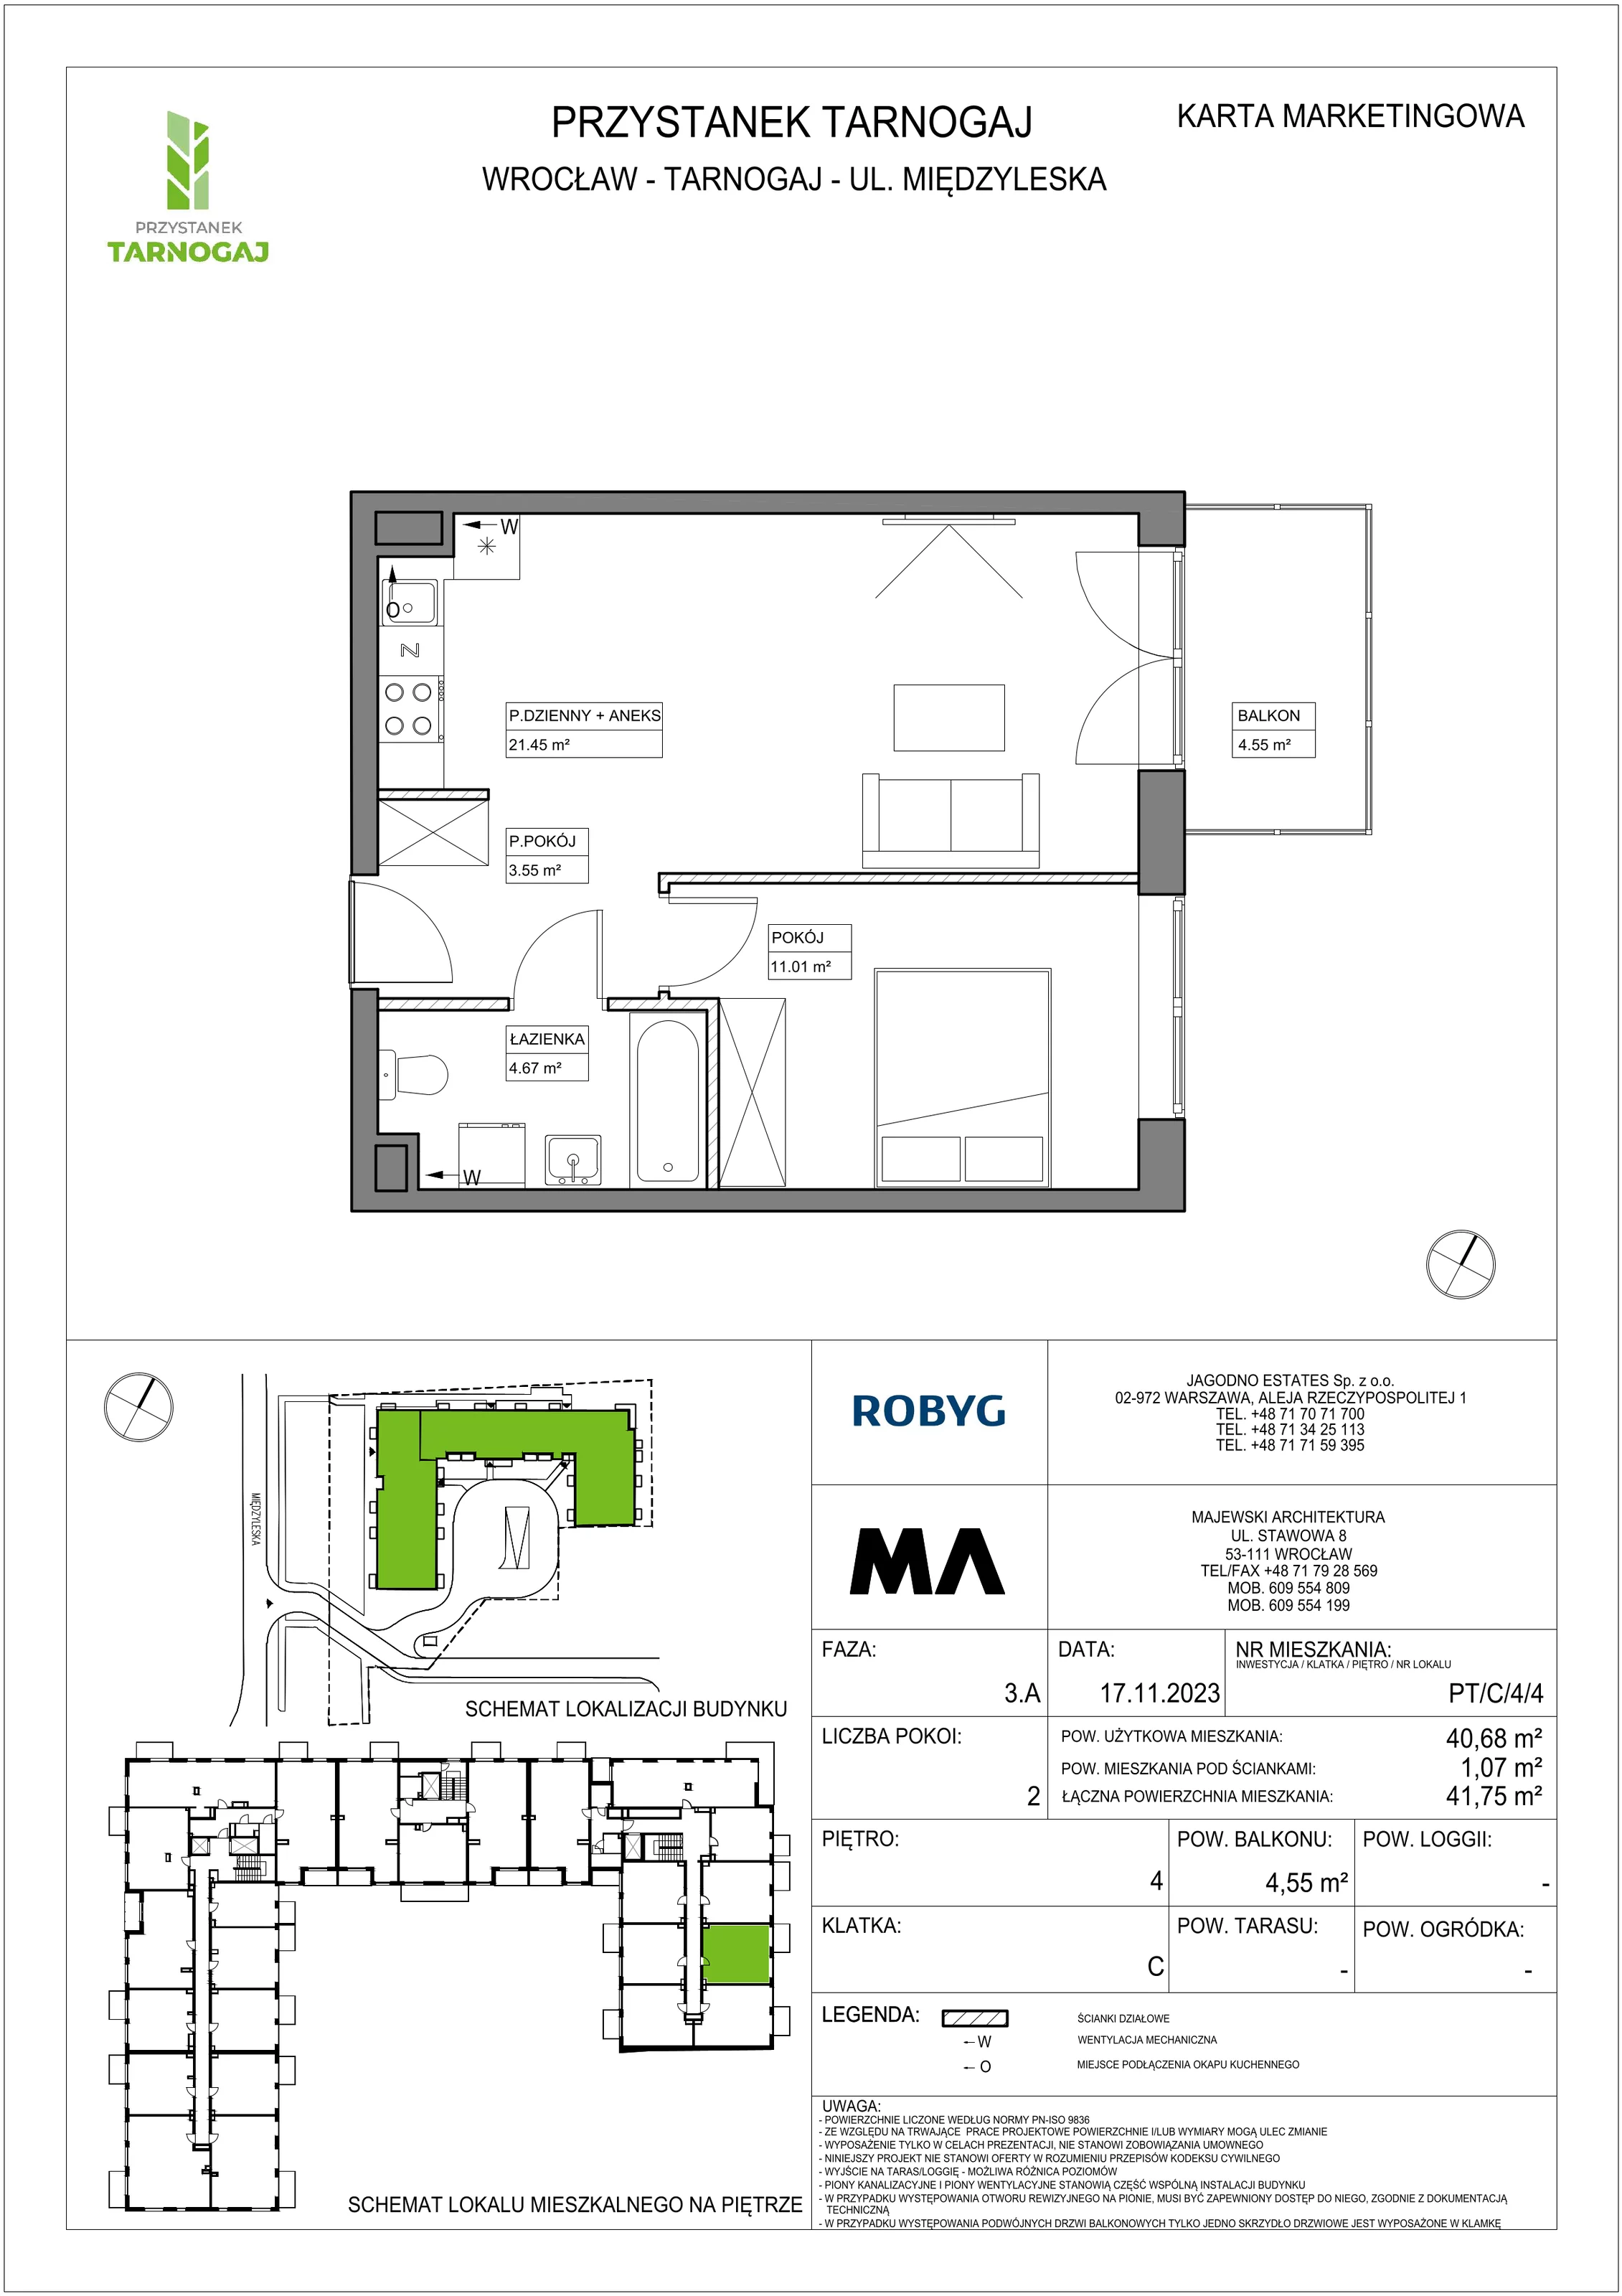 Mieszkanie 40,68 m², piętro 4, oferta nr PT/C/4/4, Przystanek Tarnogaj, Wrocław, Tarnogaj, Krzyki, ul. Międzyleska / Gazowa